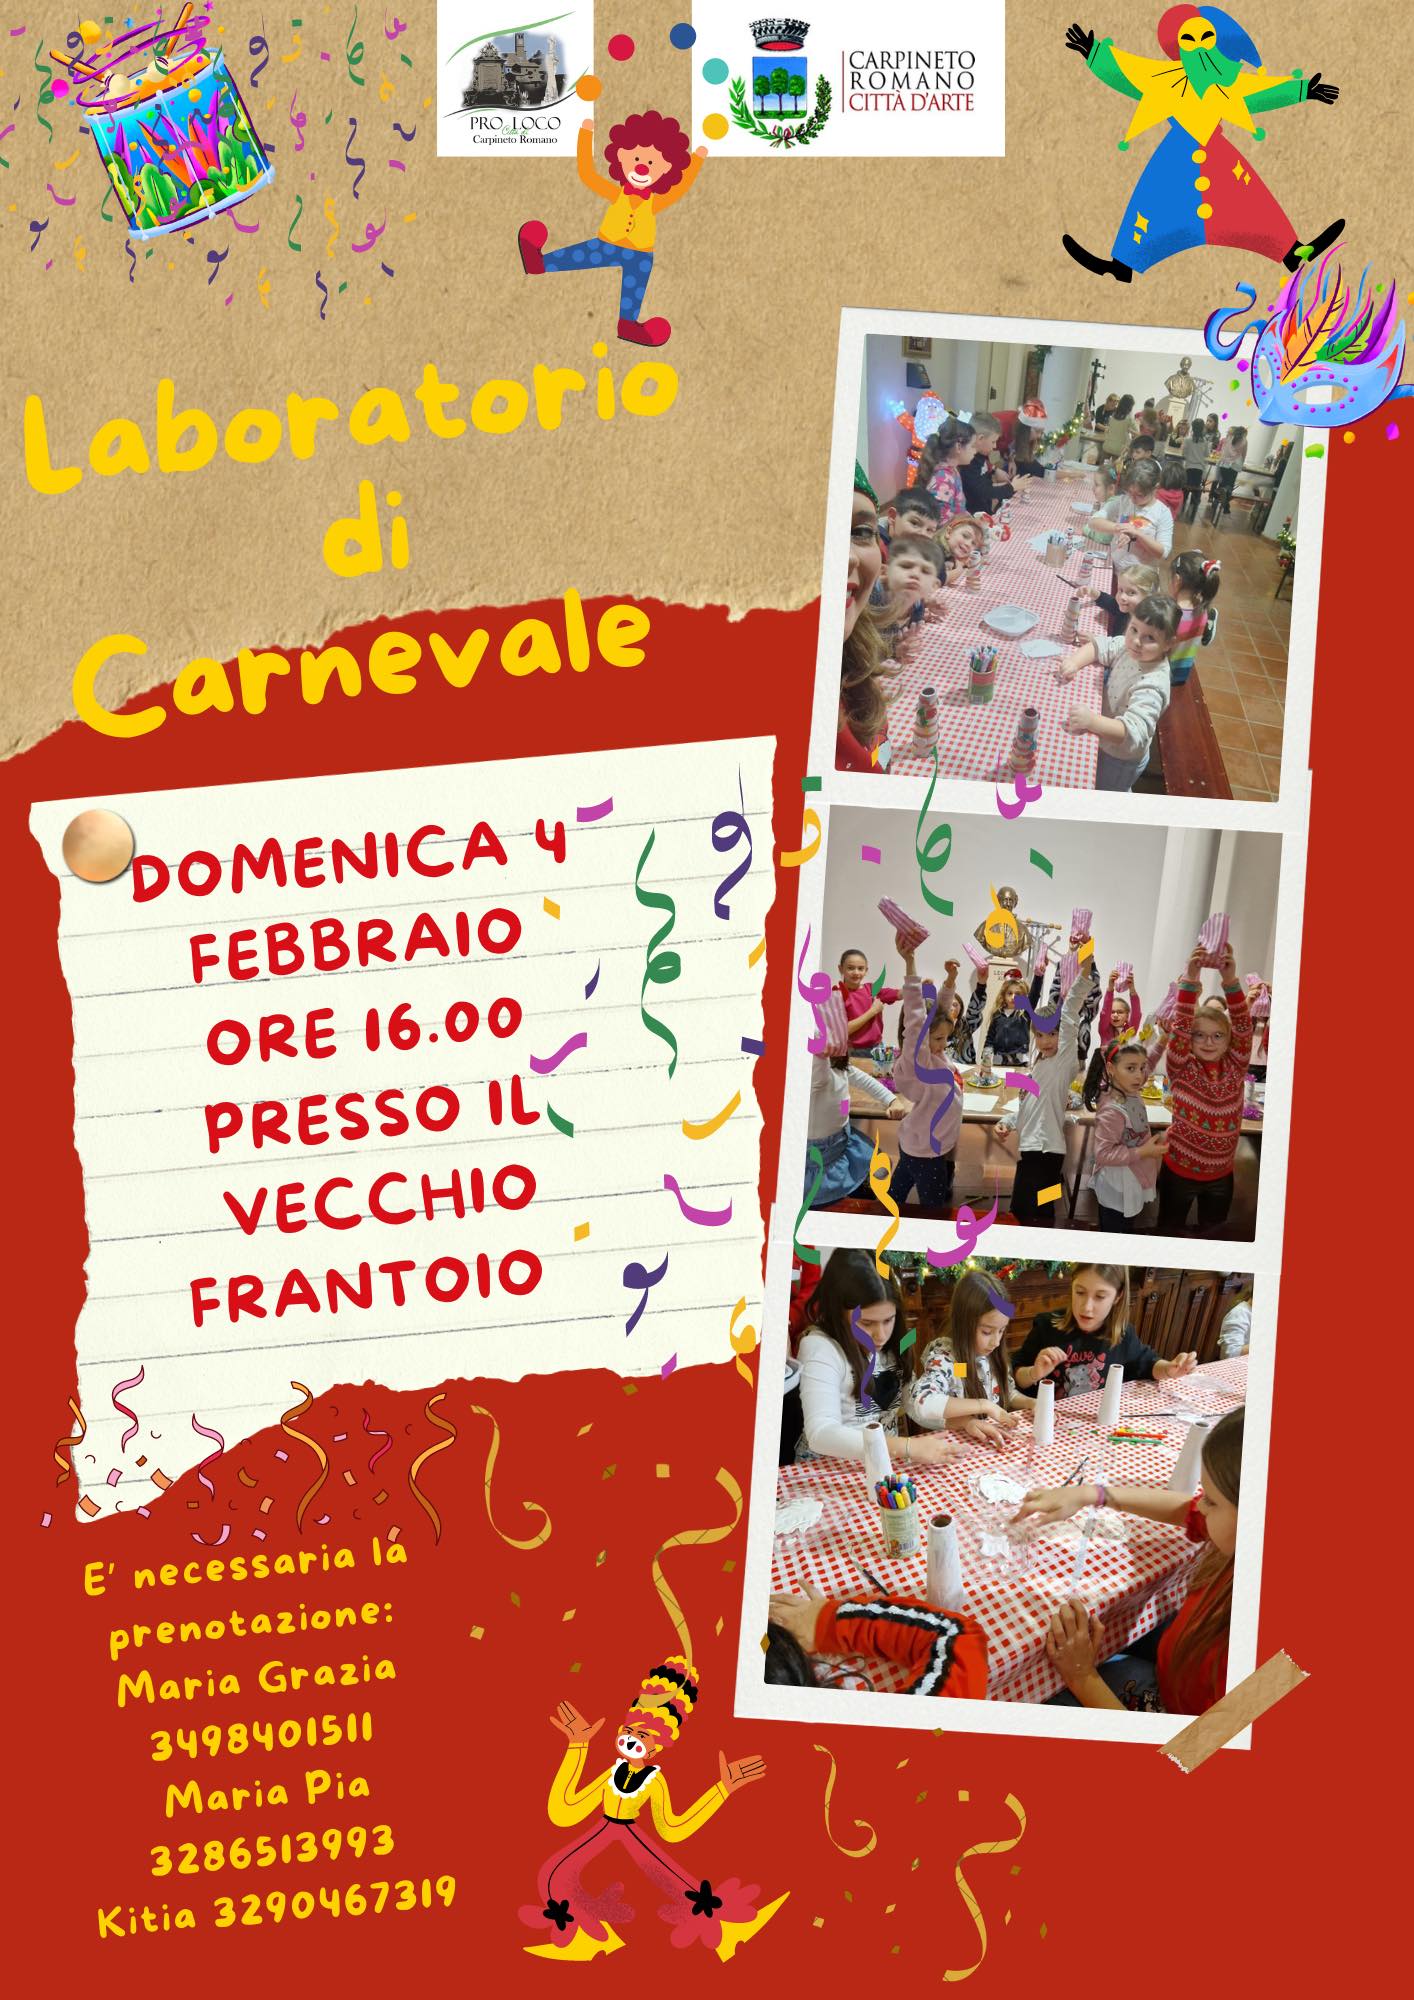 Carpineto Romano: Laboratorio di Carnevale @ Comune di Carpineto Romano